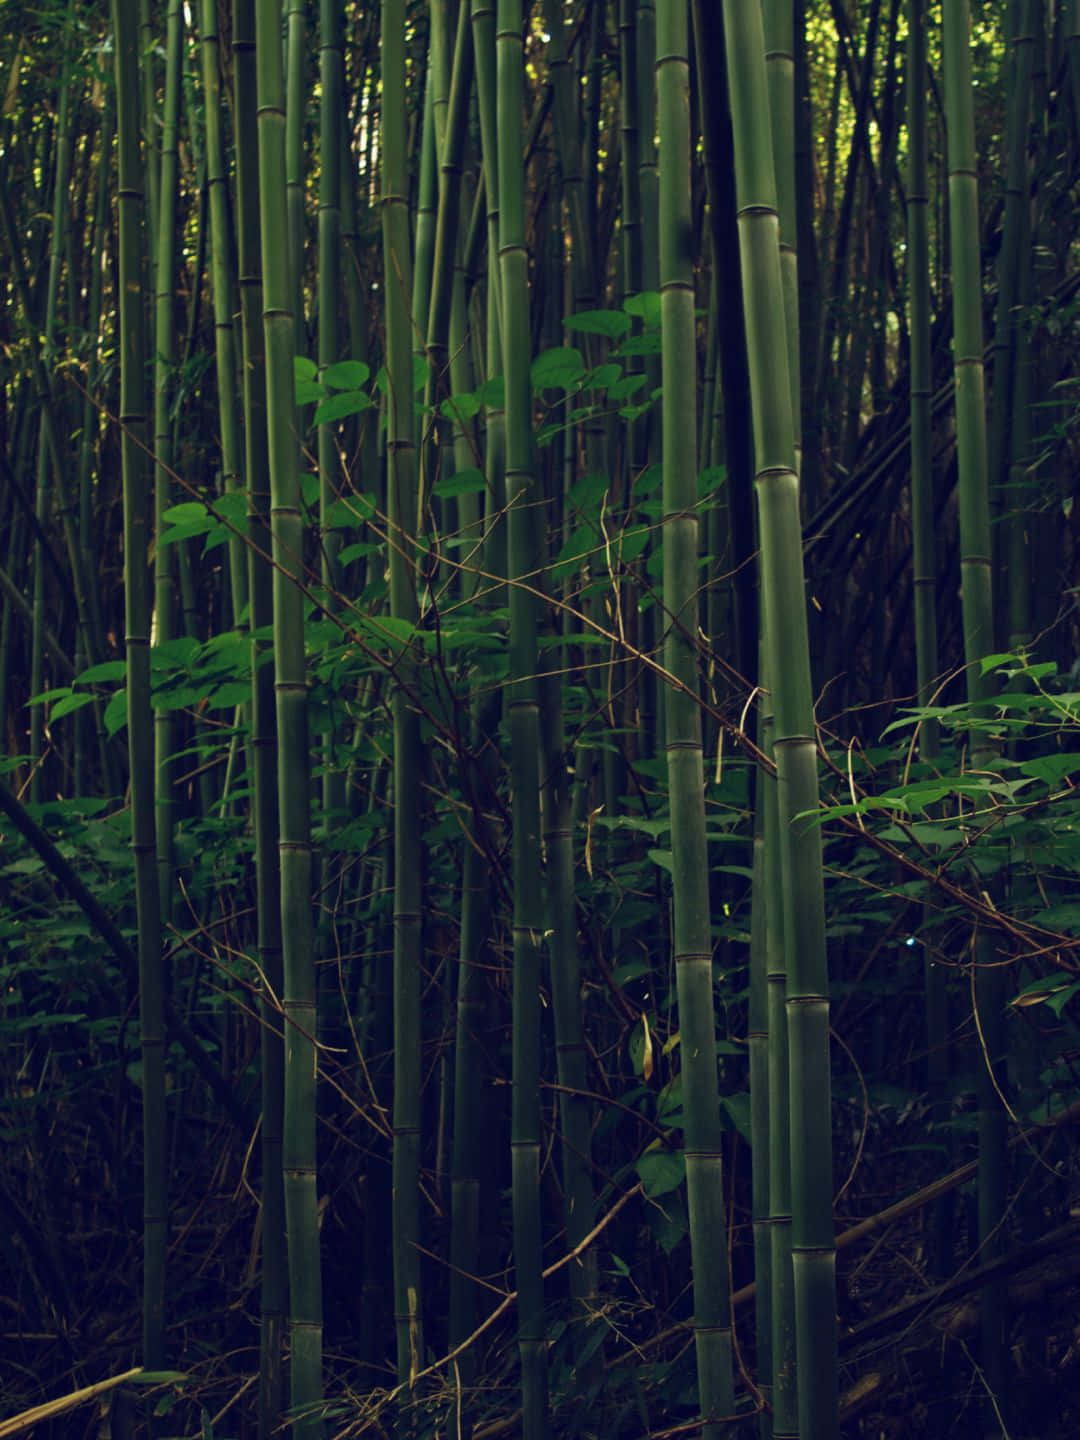 Fundode Tela De Bambu Em 1440p, Cercado Por Árvores De Bambu E Um Ambiente Escuro.